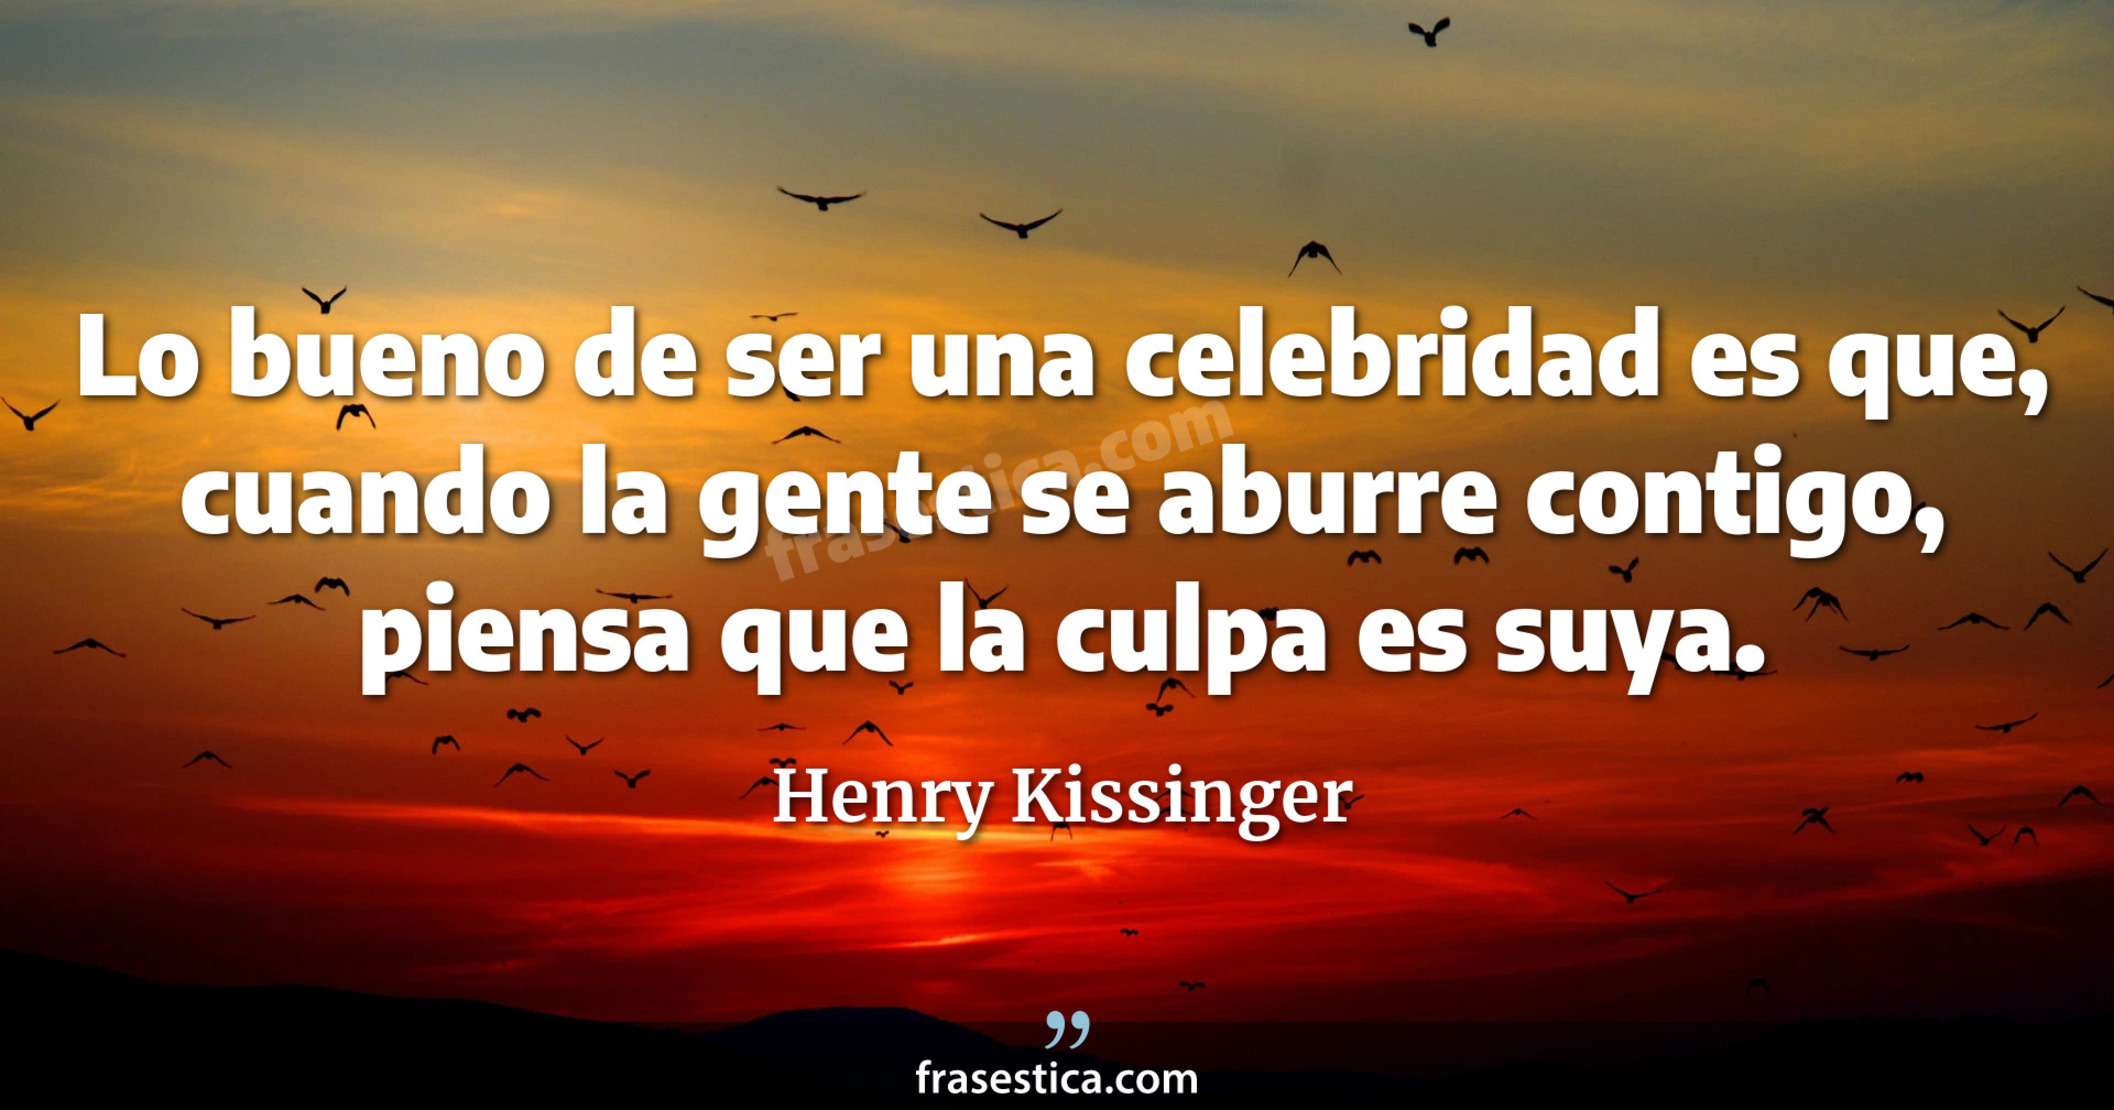 Lo bueno de ser una celebridad es que, cuando la gente se aburre contigo, piensa que la culpa es suya. - Henry Kissinger